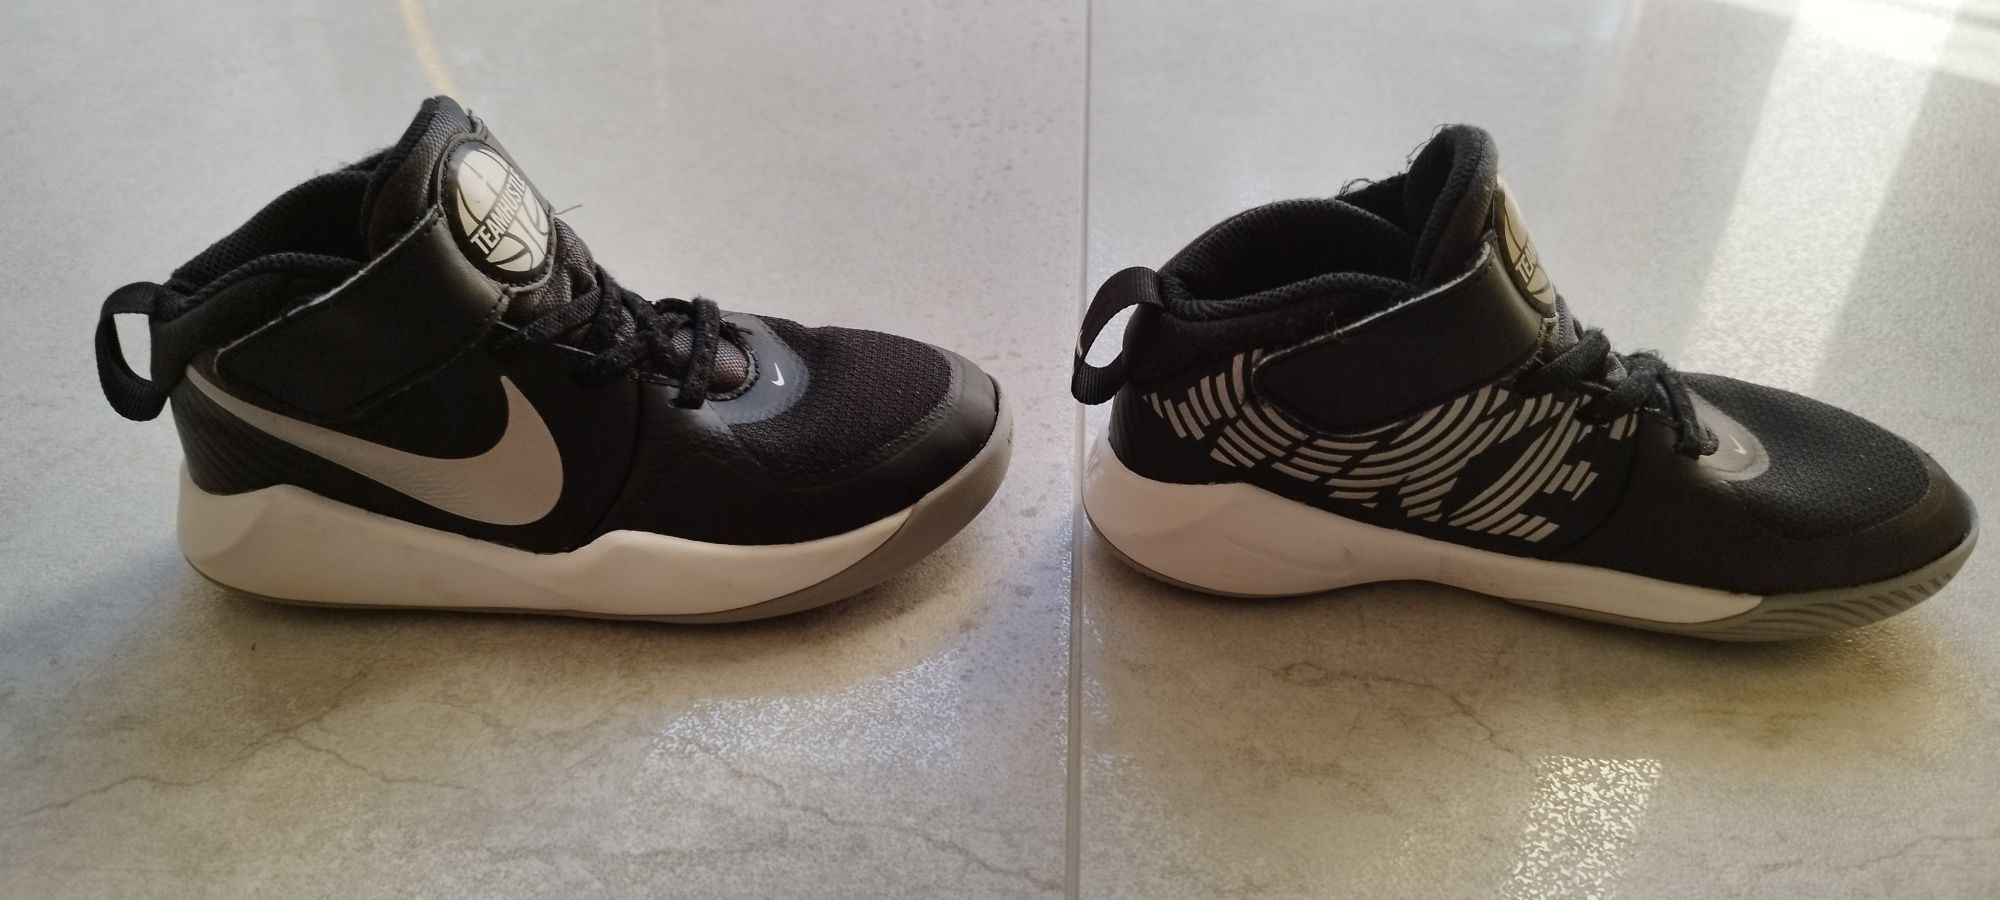 Buty dziecięce Nike do koszykówki wysoka cholewka rozmiar 30 C12,5 bdb